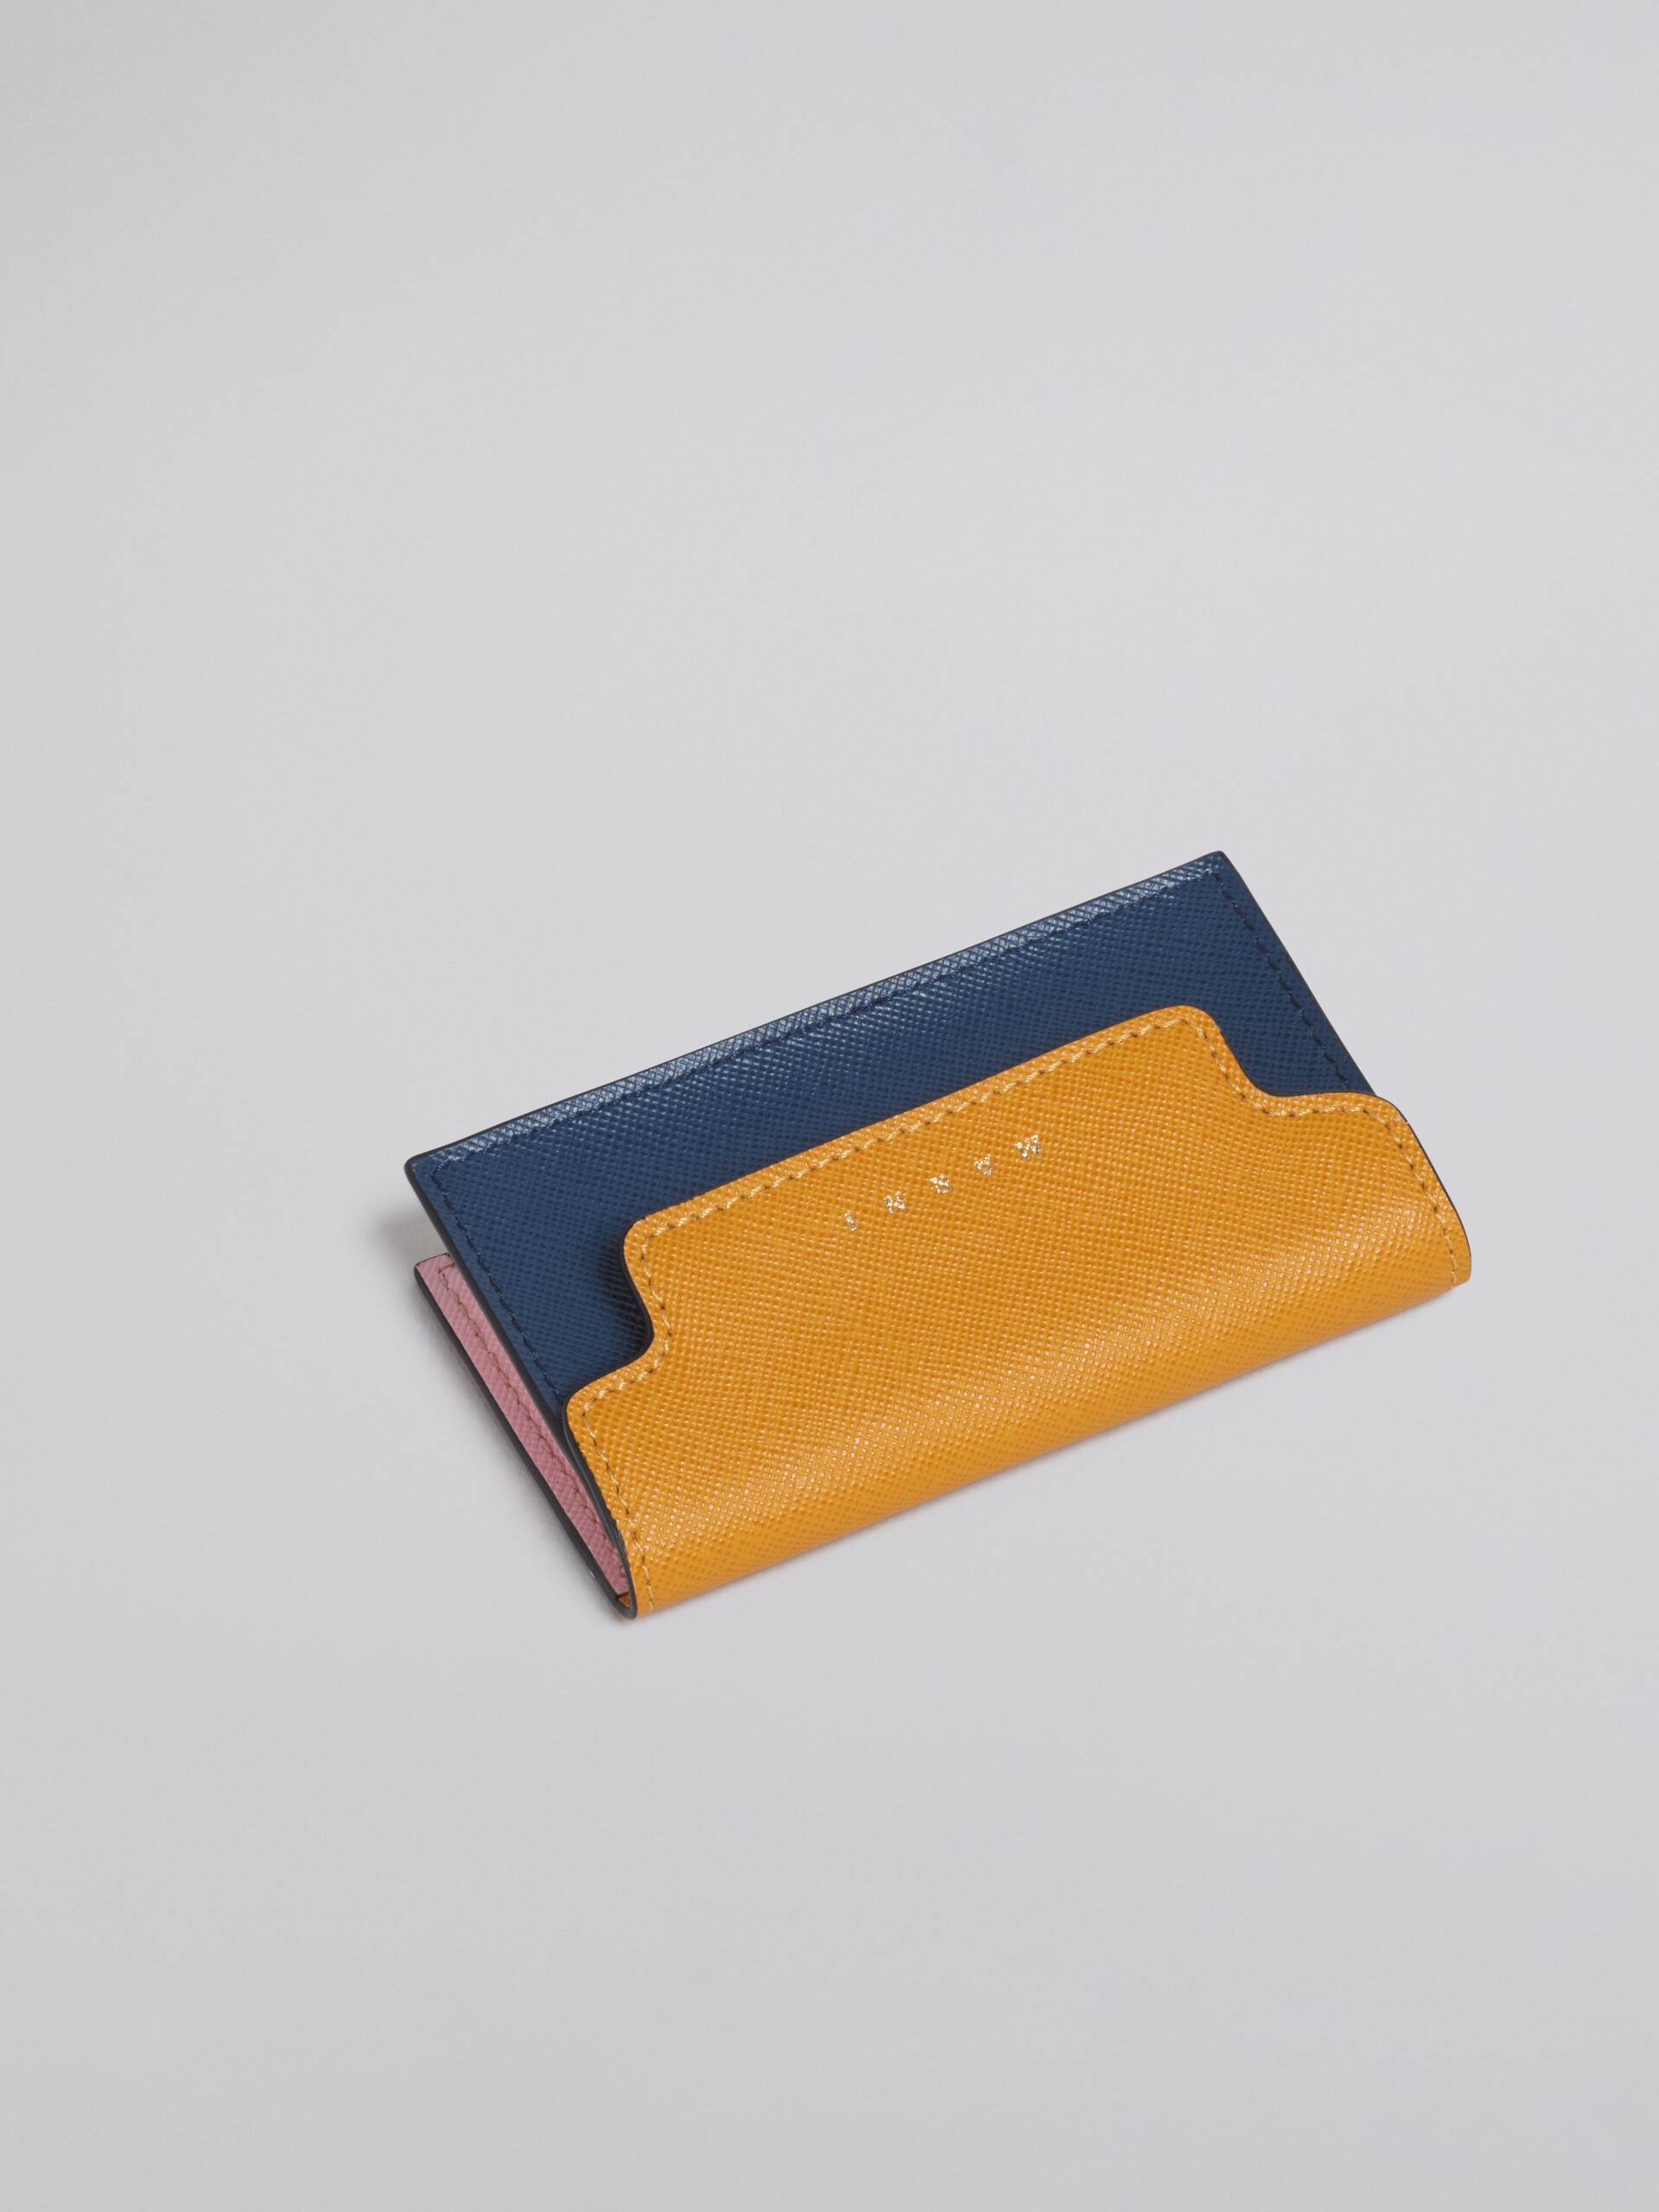 Portabiglietti da visita in saffiano arancio rosa e blu - Portafogli - Image 4